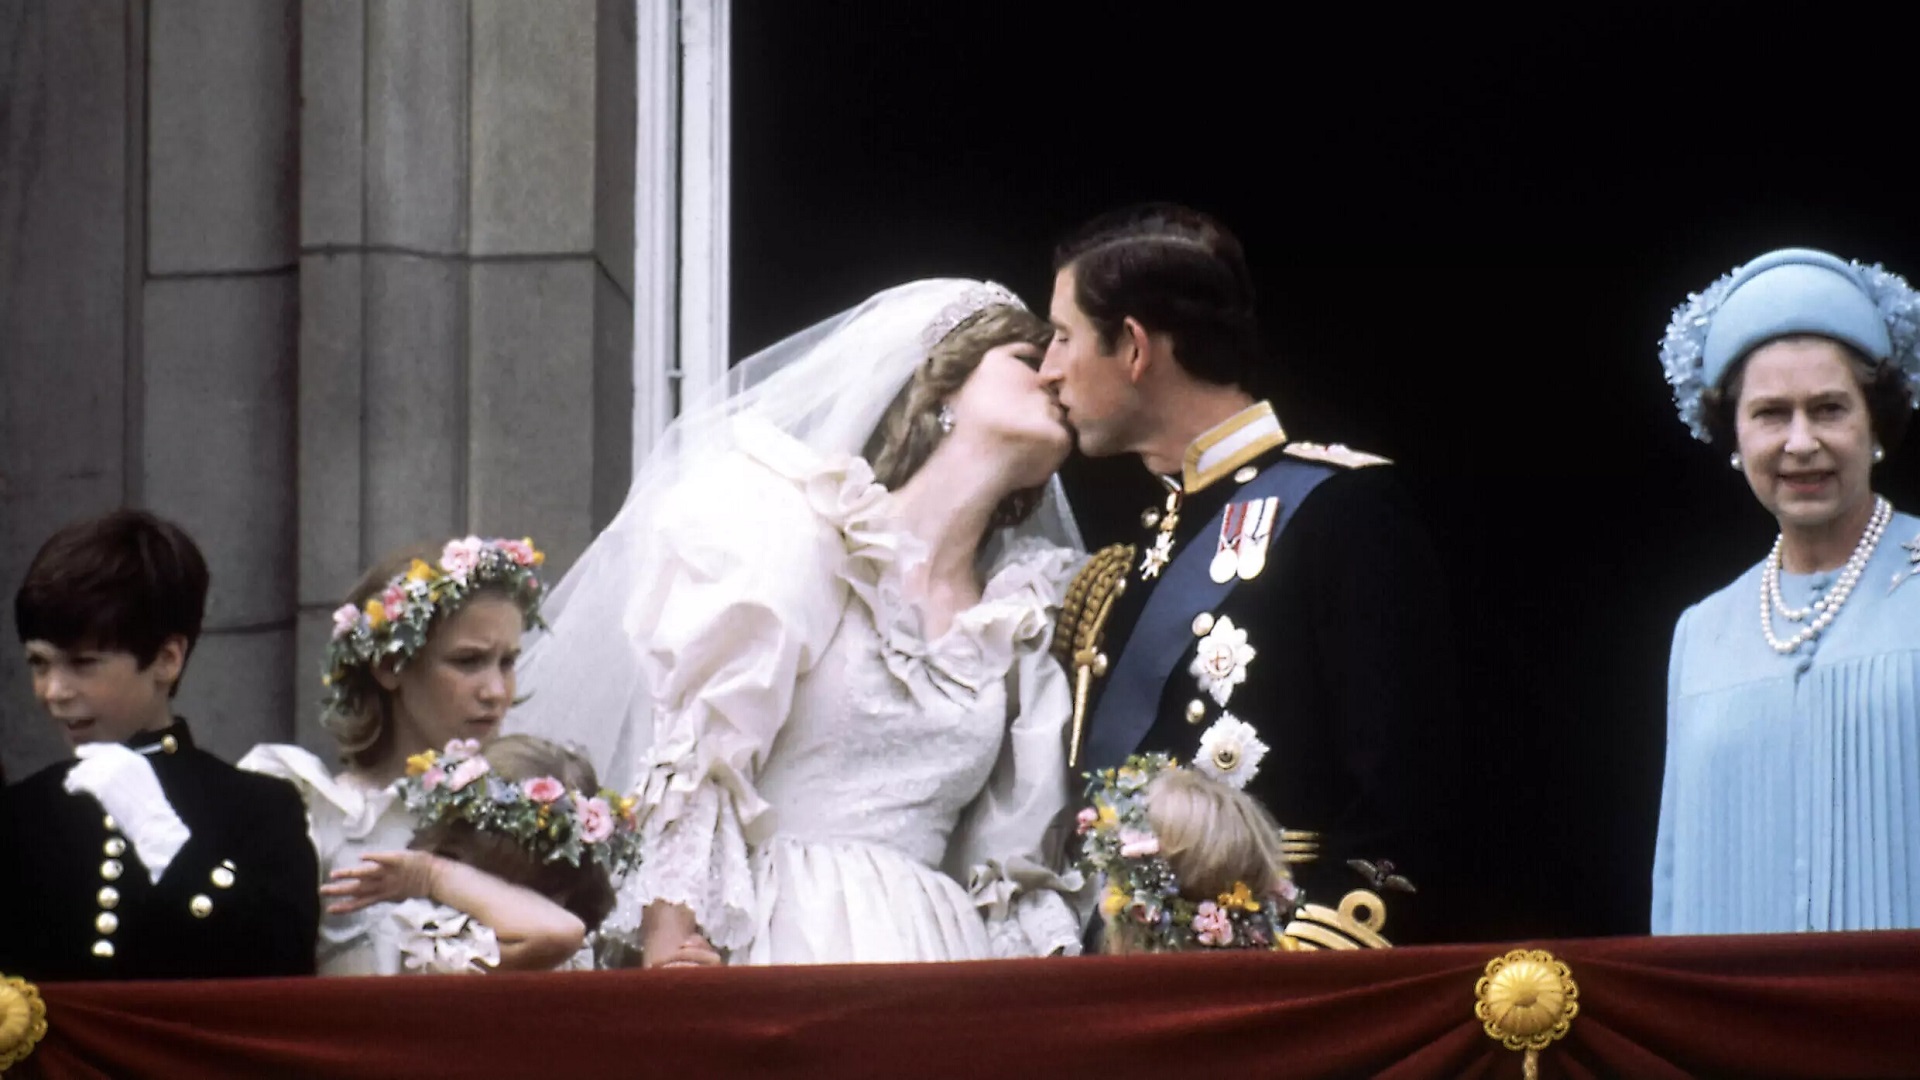 الأمير تشارلز وزوجته ديانا بعد عقد قرانها في كاتدرائية سان بول في شرفة قصر باكنغهام في 29 تموز 1981